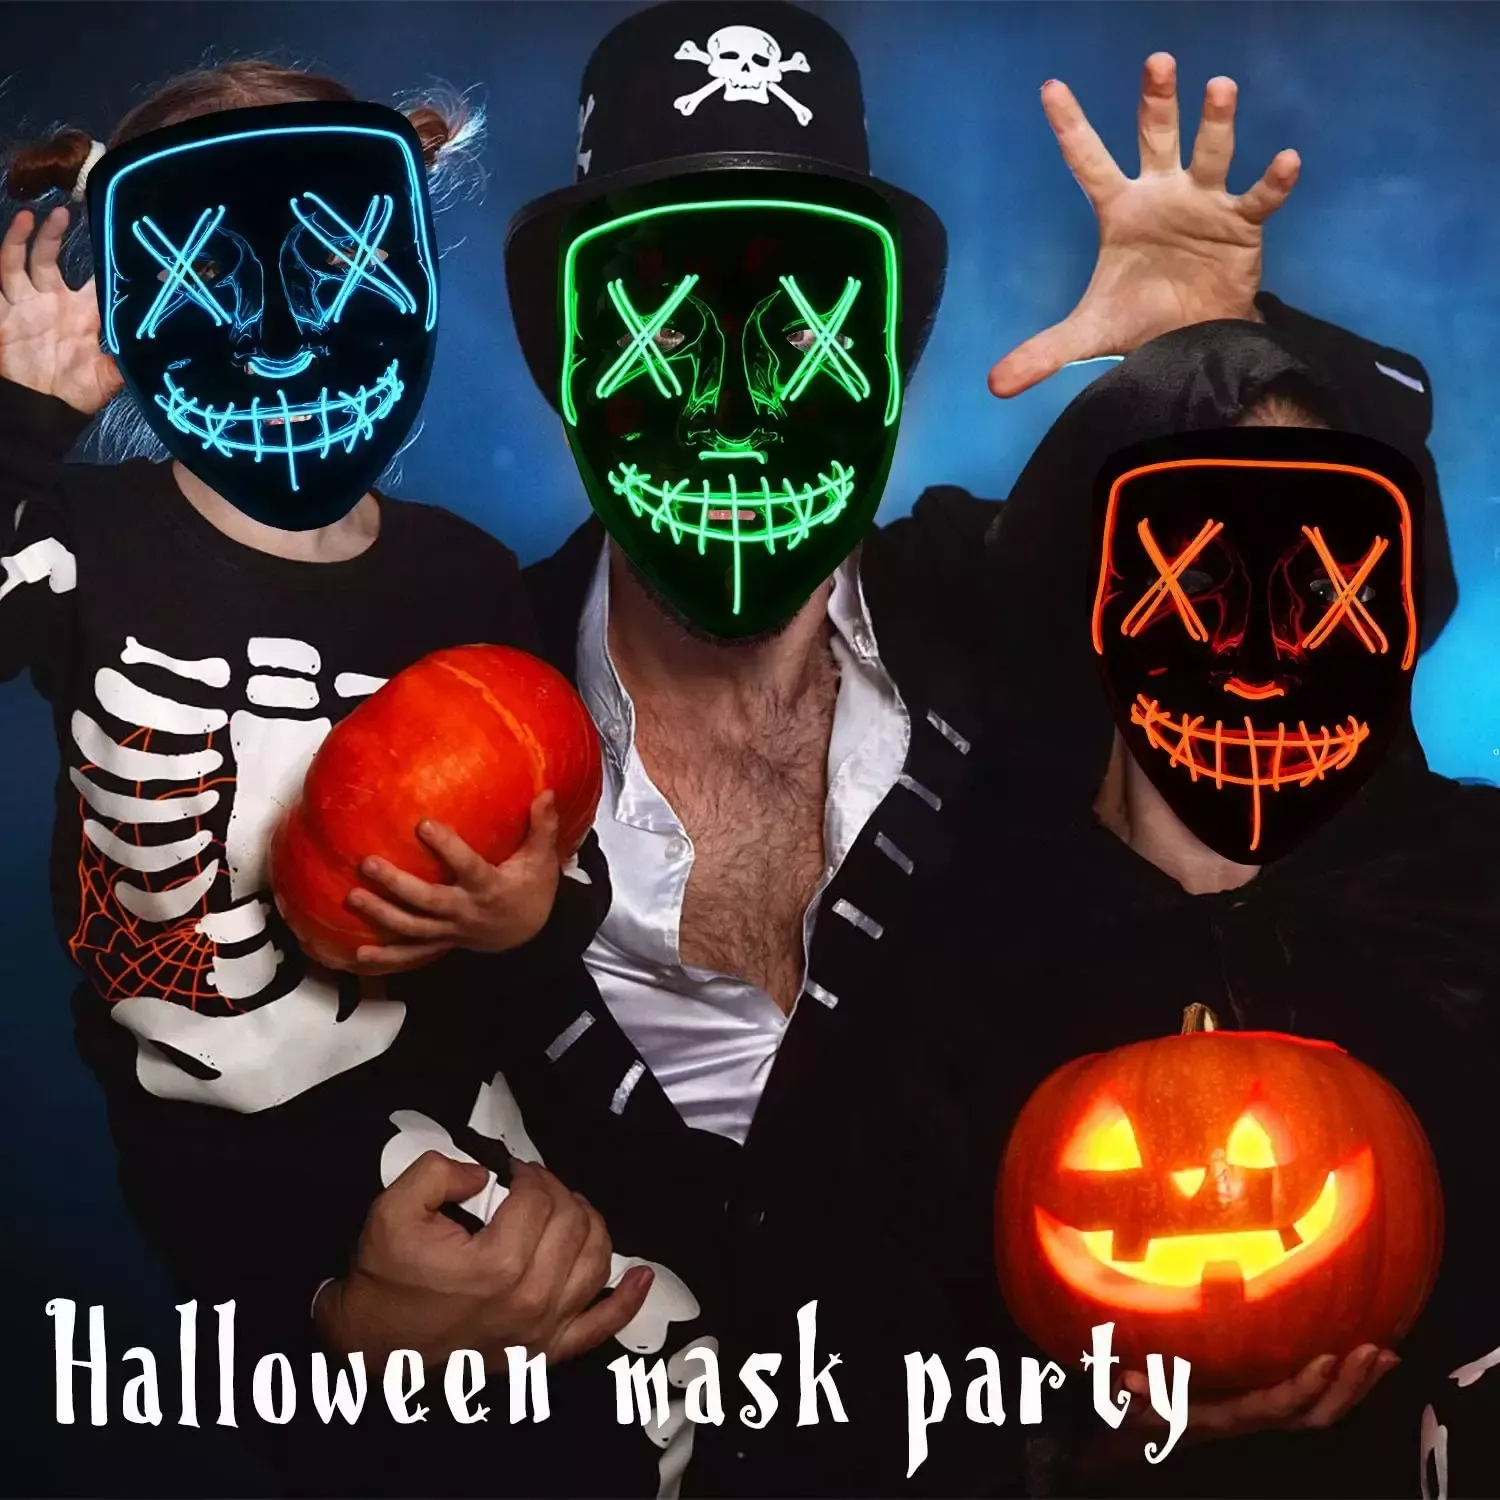 Masque LED Halloween Party Masque Masquerade Masques Néon Masques Light Glow dans le masque d'horreur sombre Masque de couleur mélangée Masque FY9210